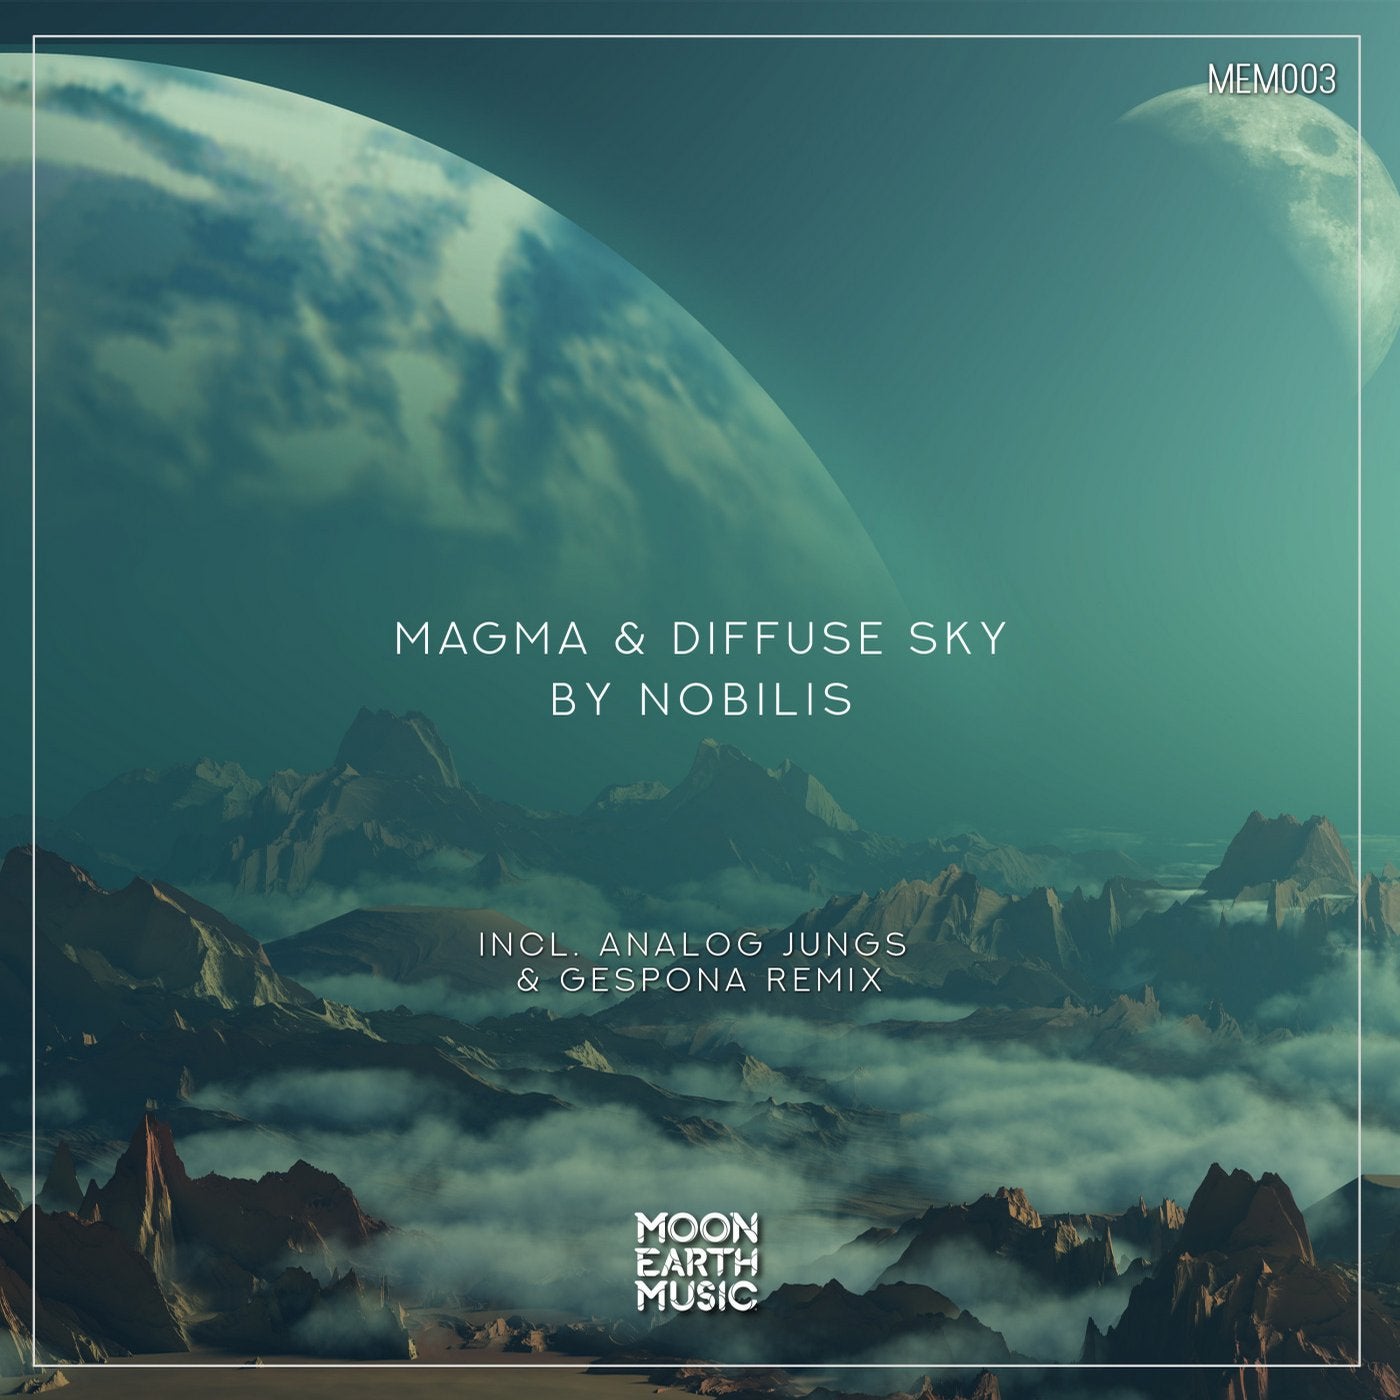 Magma & Diffuse Sky